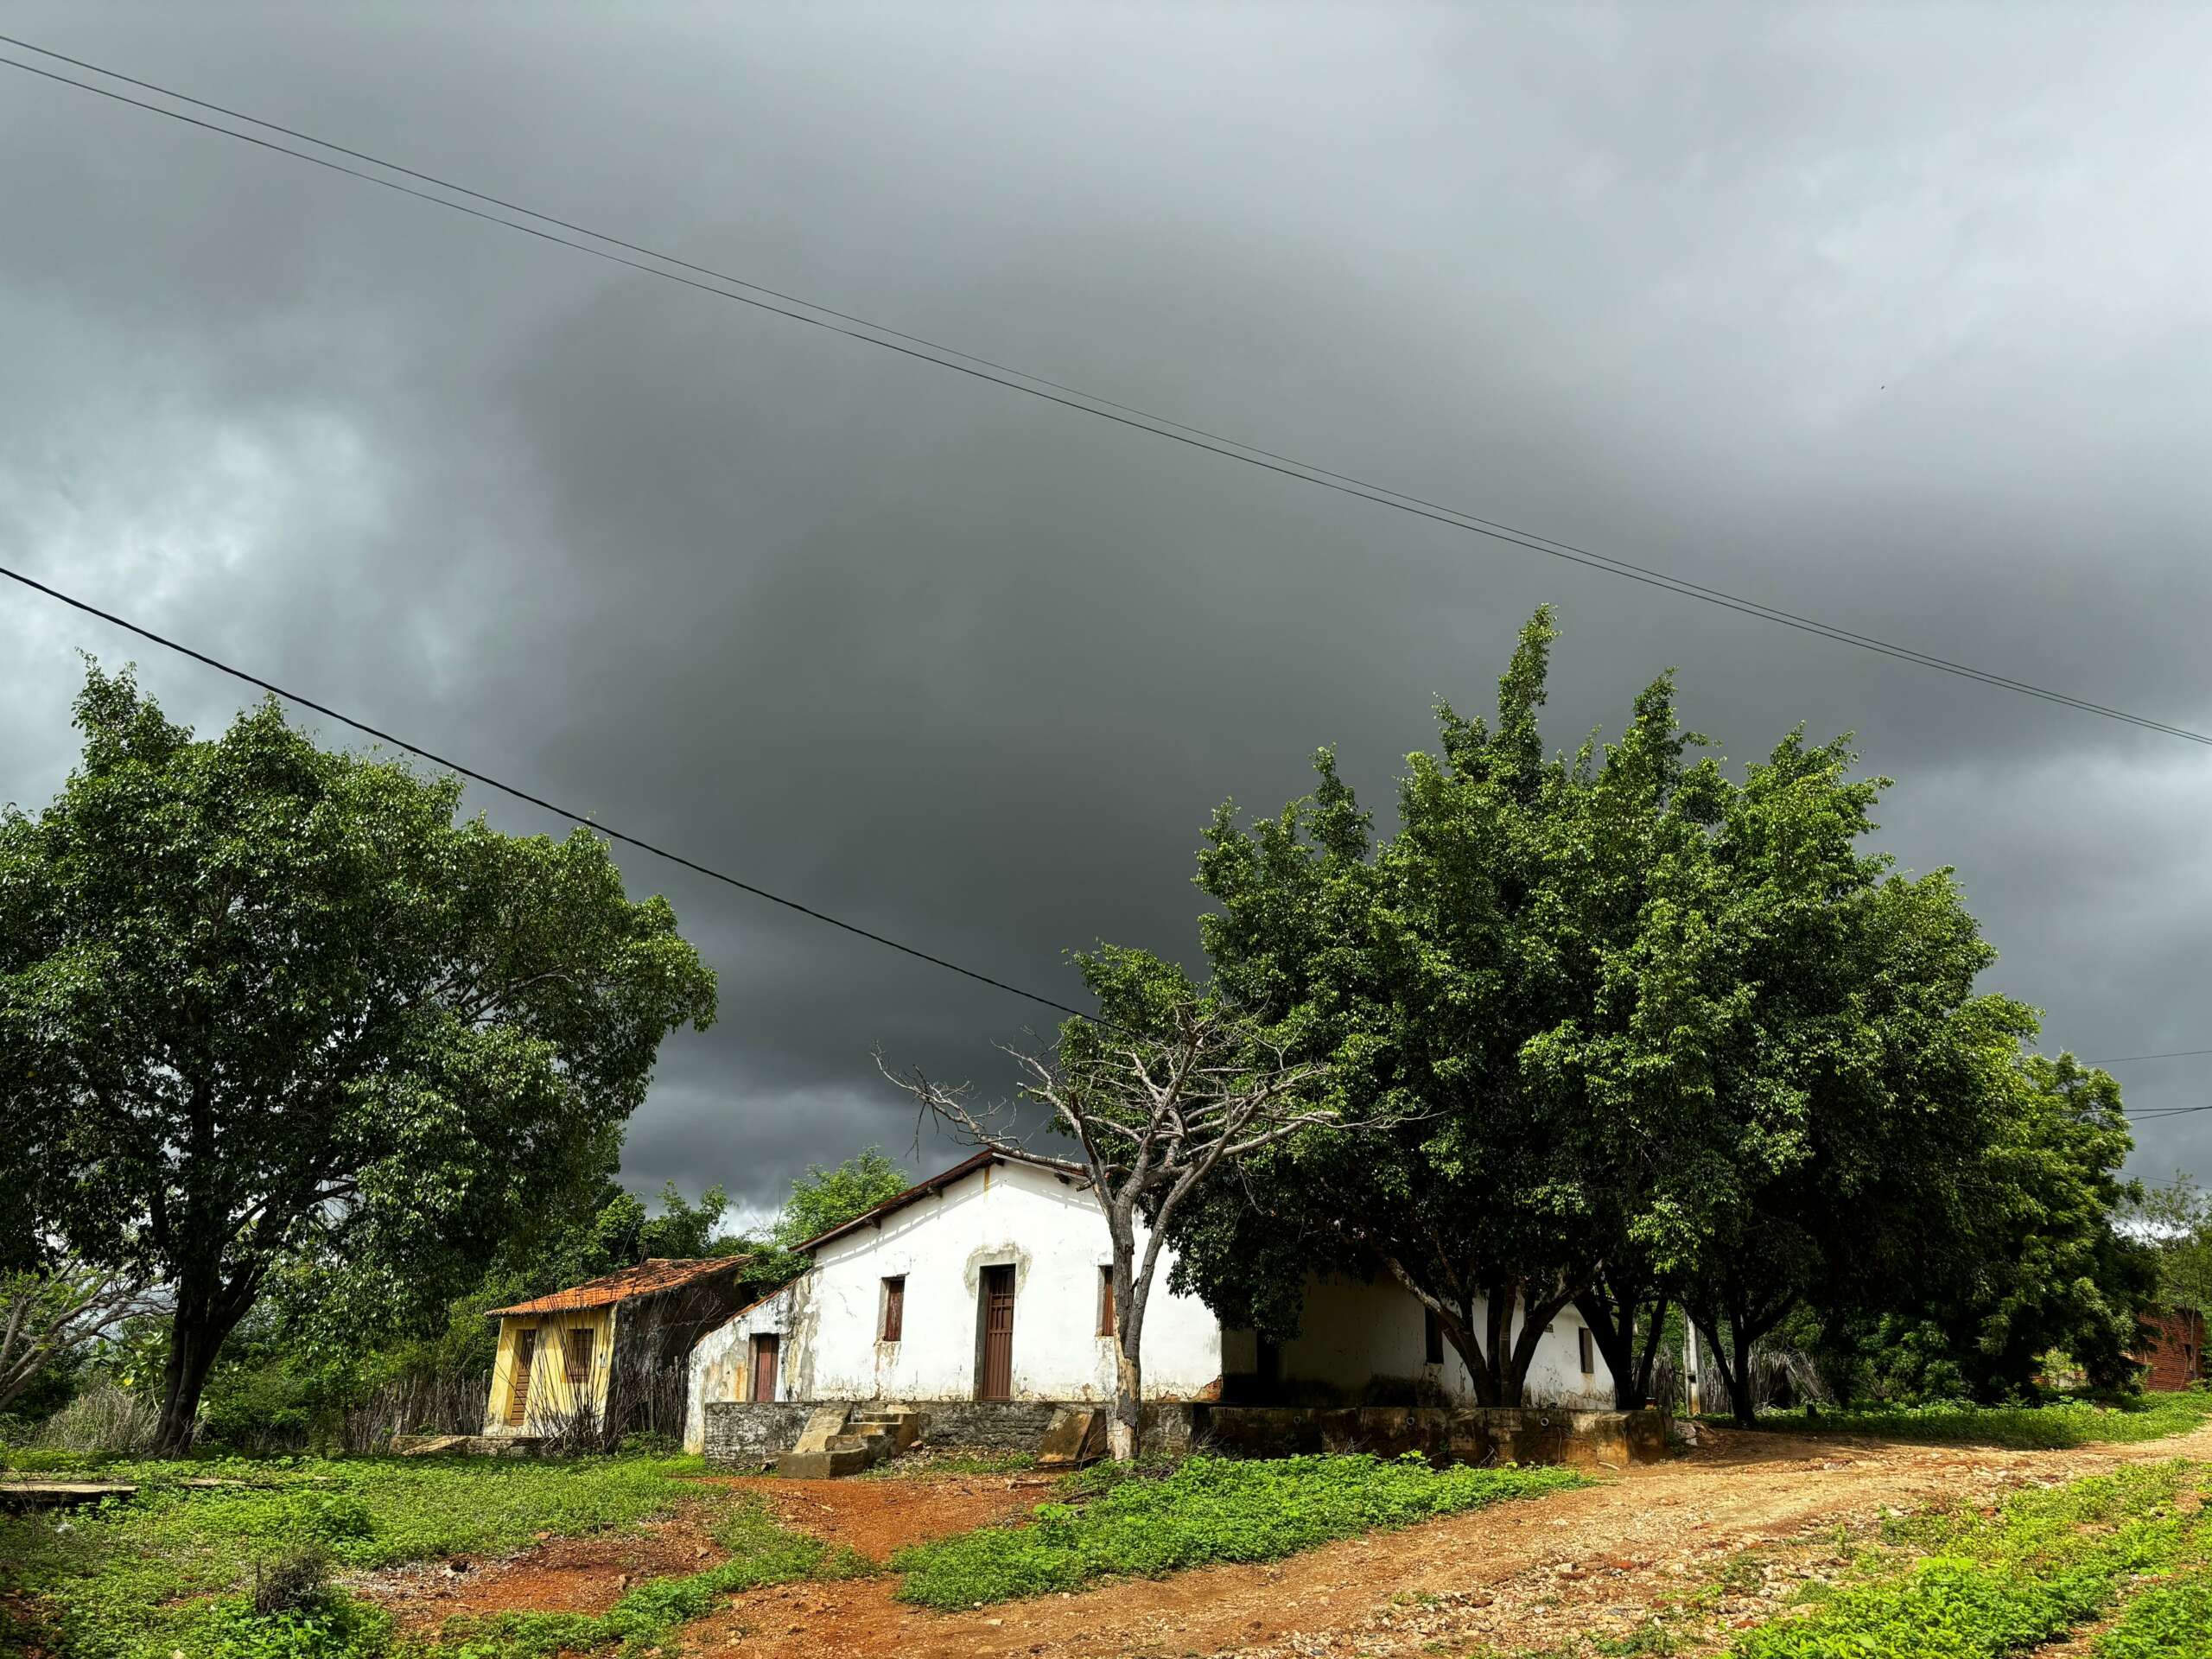 Fevereiro deverá fechar com mais precipitações (FOTO: Marciel Bezerra)